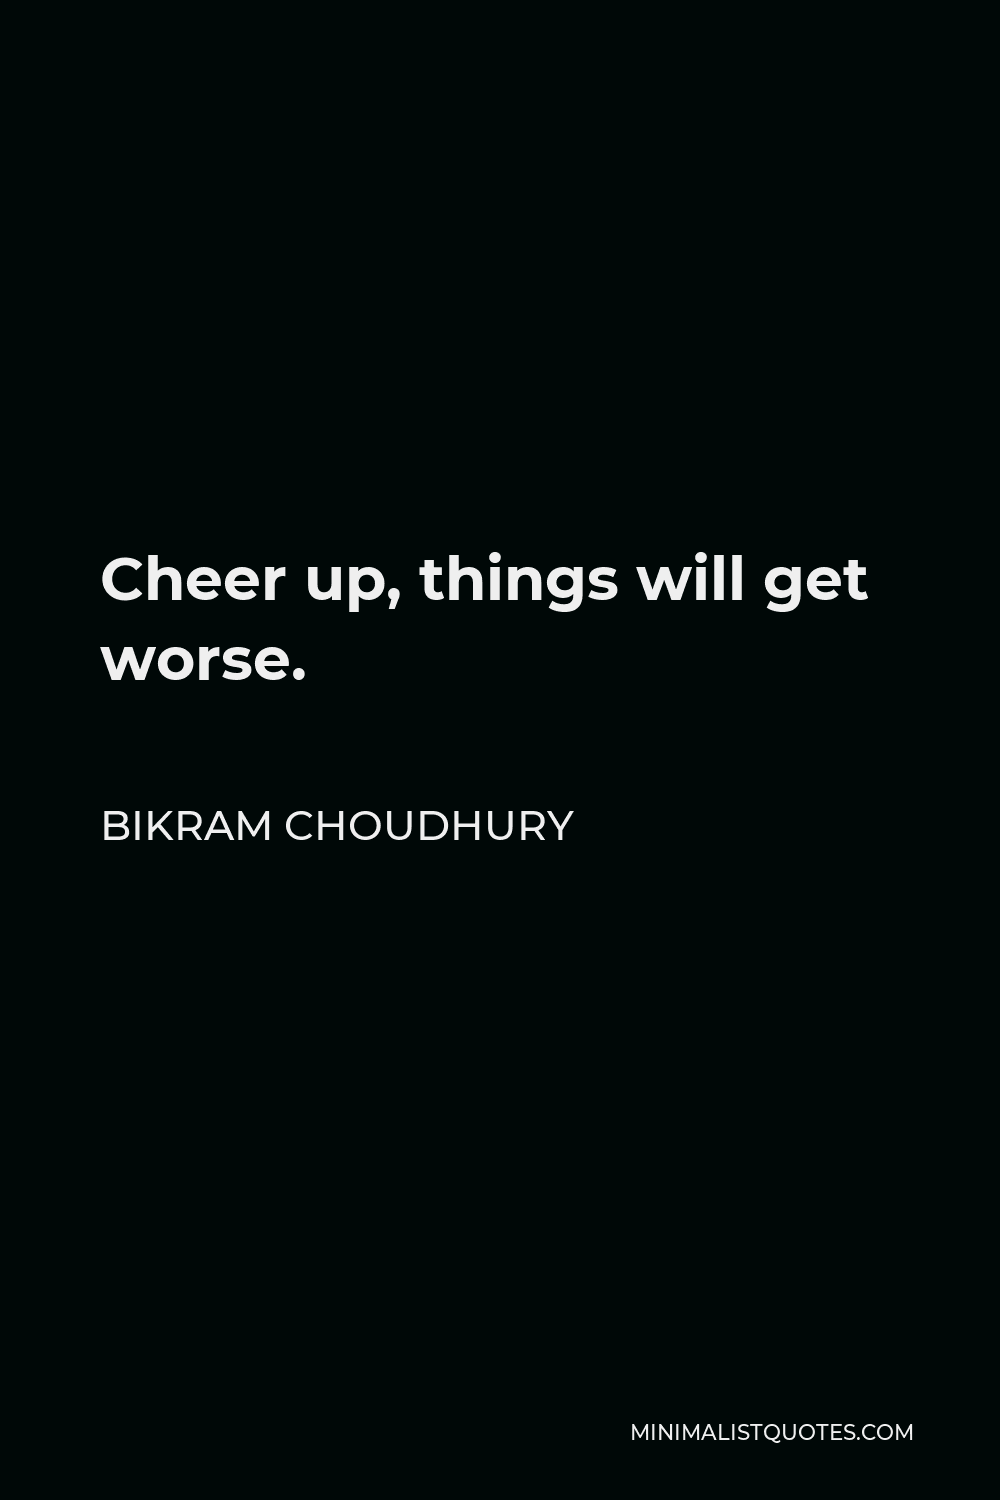 Bikram Choudhury Quote - Cheer up, things will get worse.